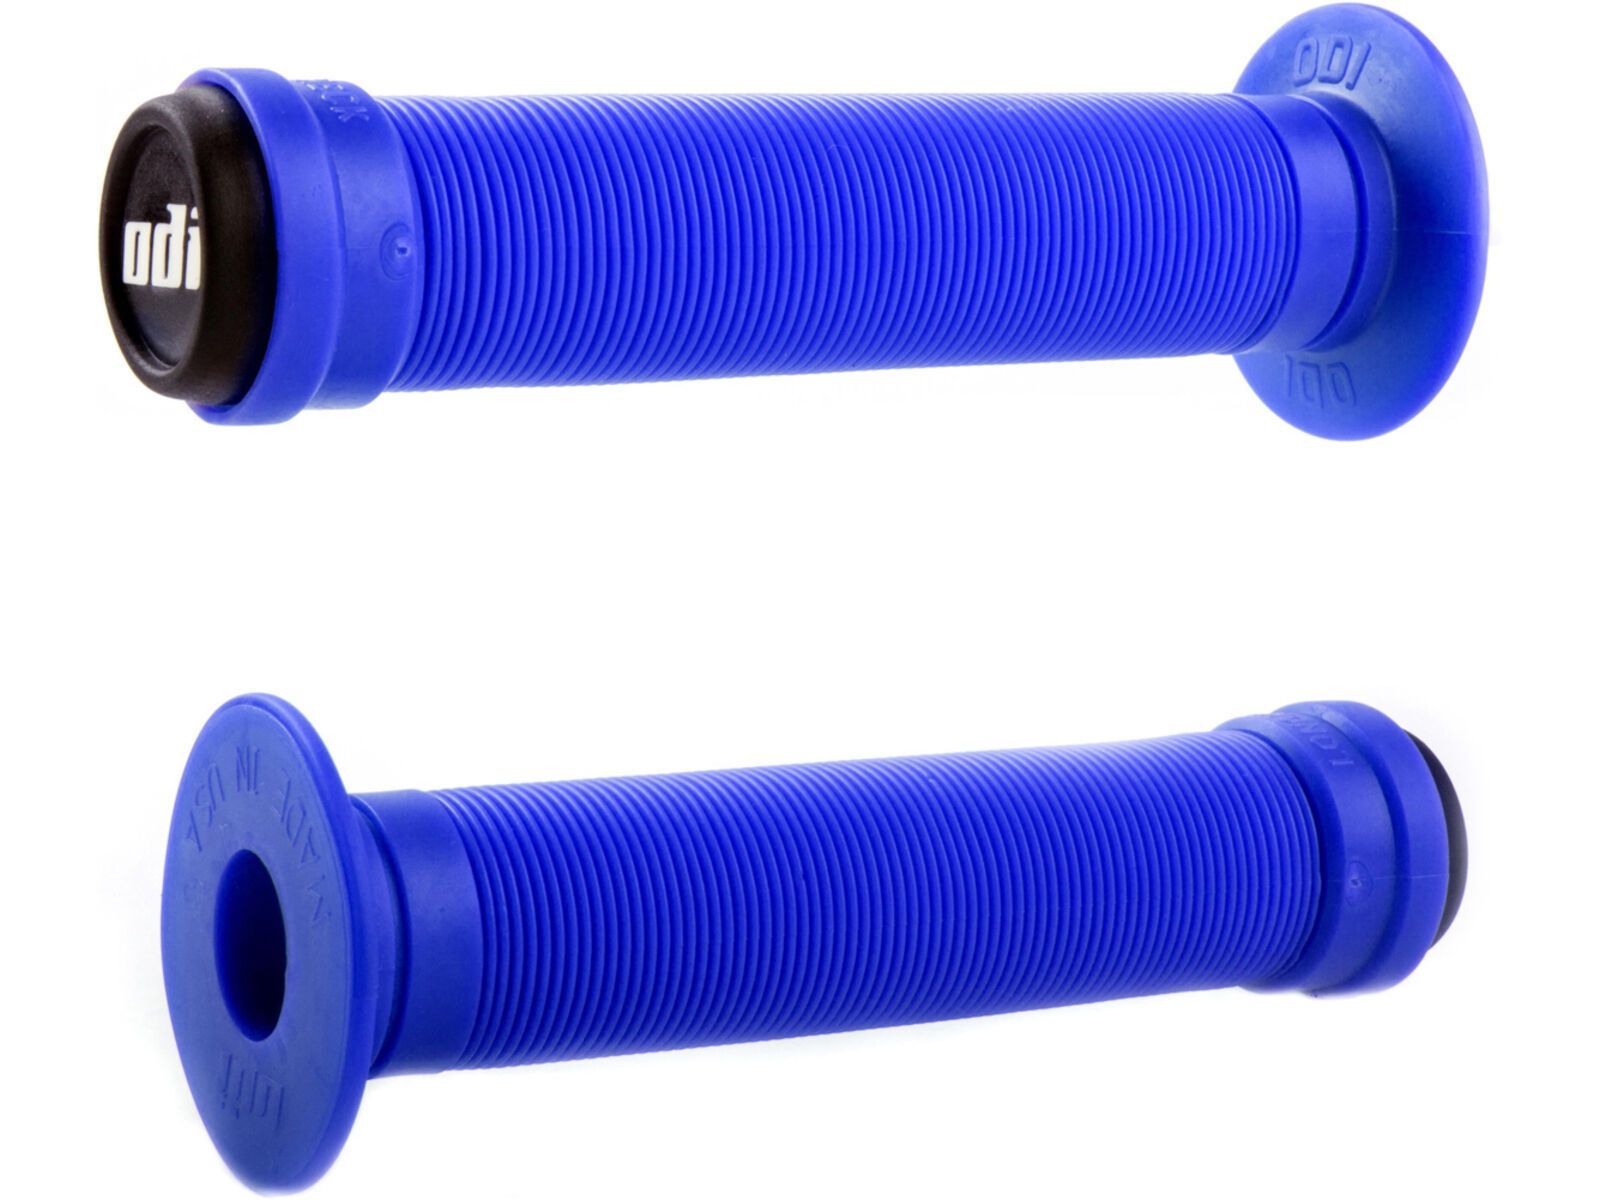 ODI Longneck ST BMX Grips, blau | Bild 1